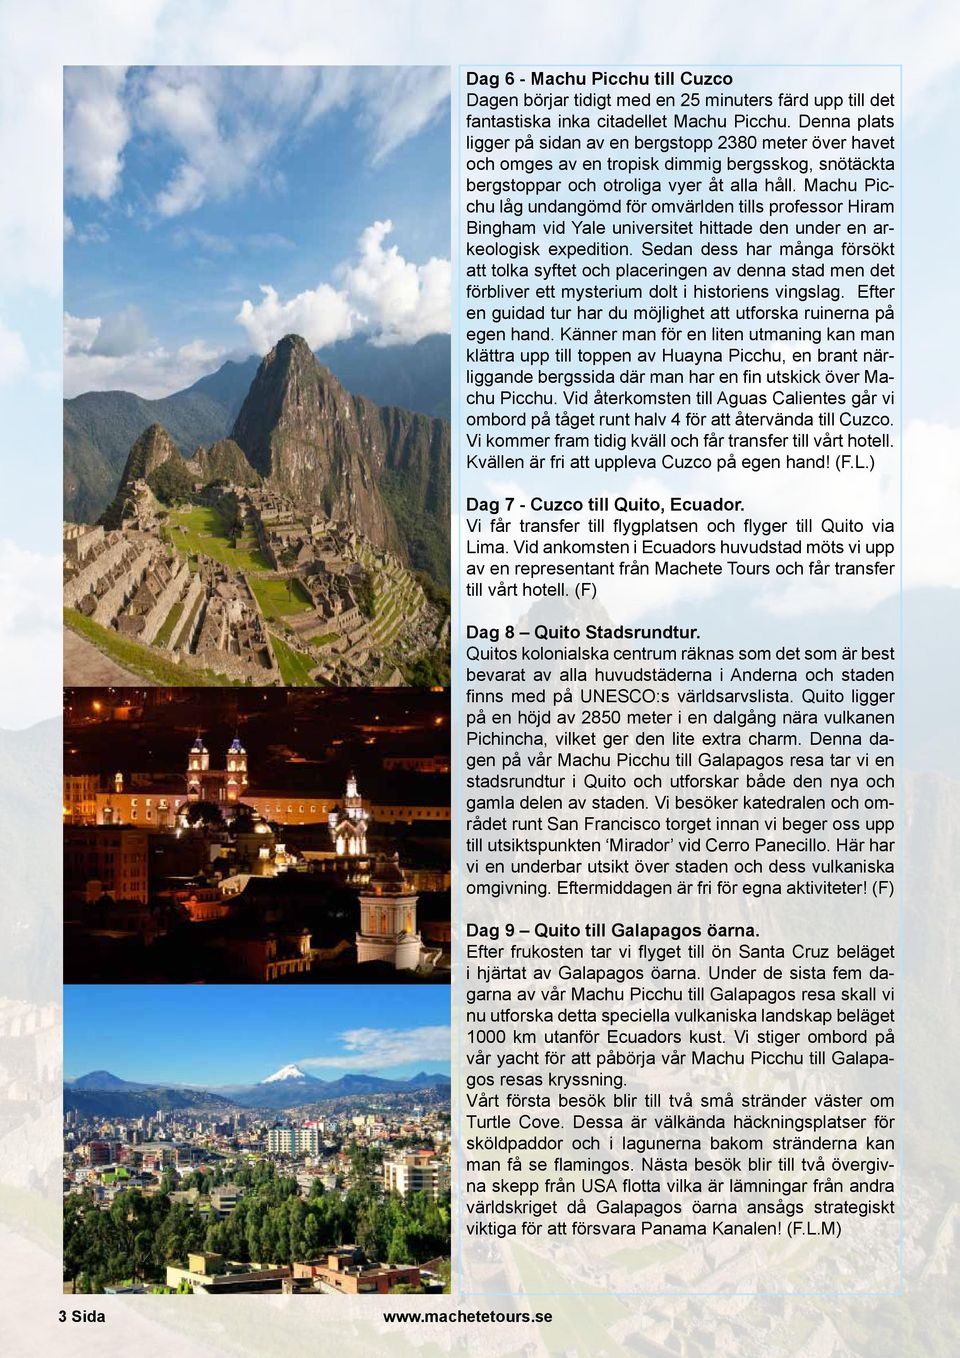 Machu Picchu låg undangömd för omvärlden tills professor Hiram Bingham vid Yale universitet hittade den under en arkeologisk expedition.